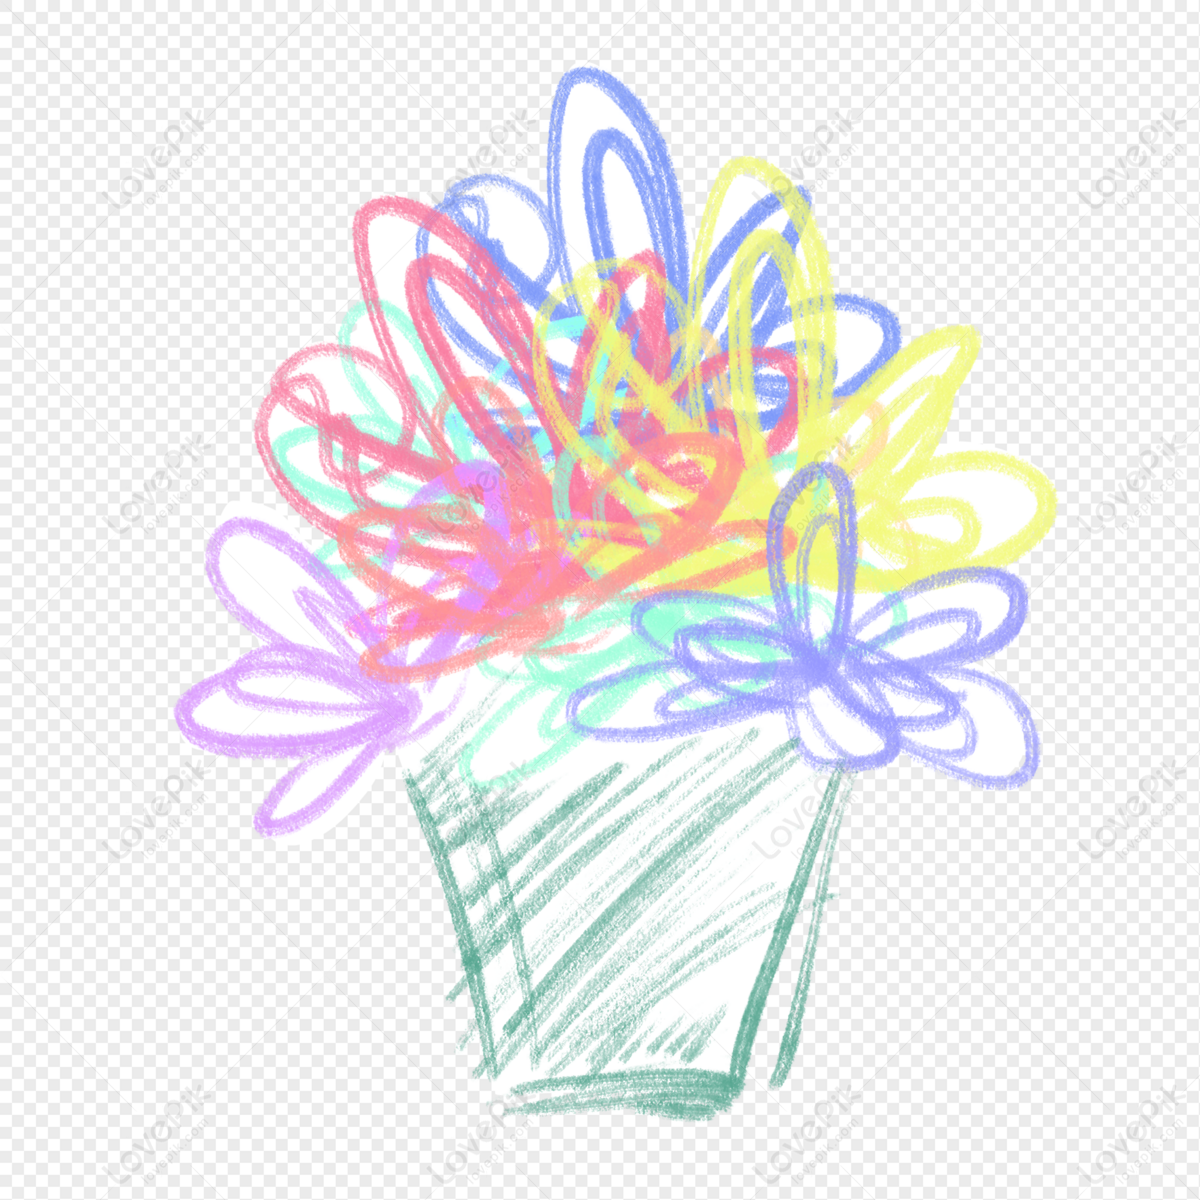 Pencil Drawings of Flowers